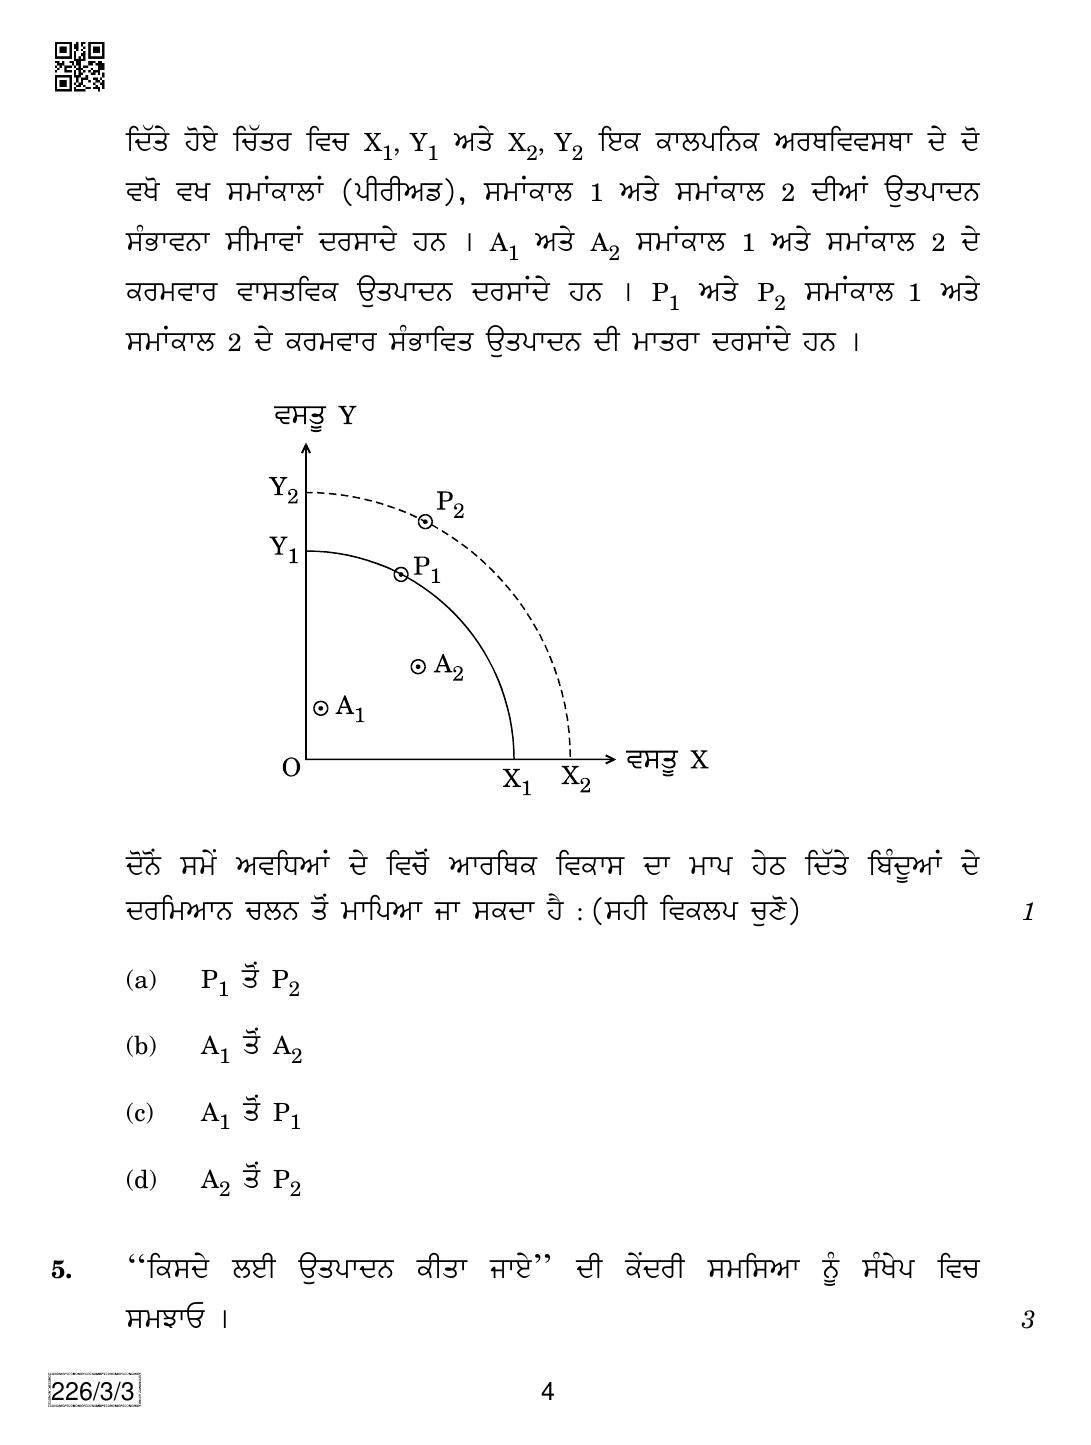 CBSE Class 12 226-3-3 Economics (Punjabi) 2019 Question Paper - Page 4